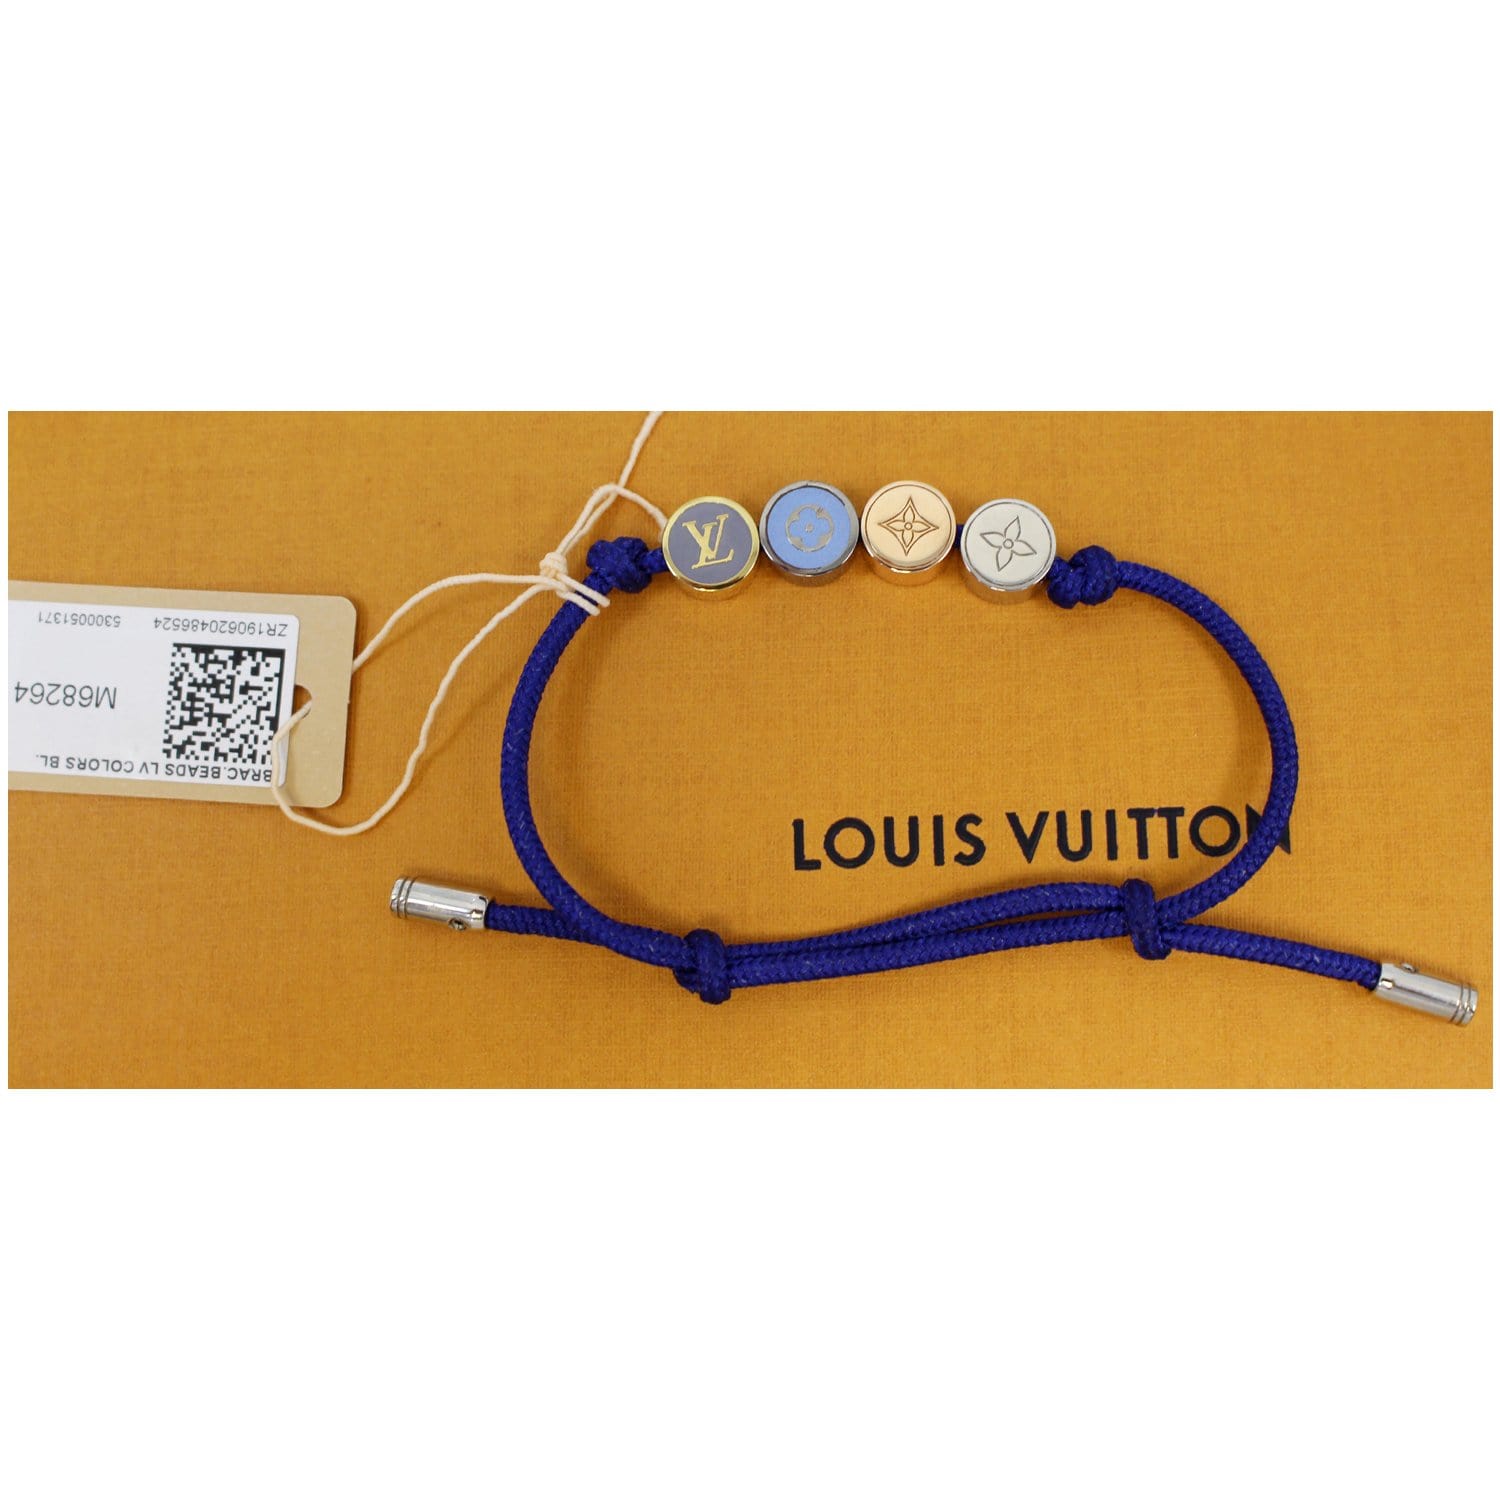 Louis Vuitton leather bracelet  Louis vuitton bracelet, Leather bracelet,  Classic bracelets